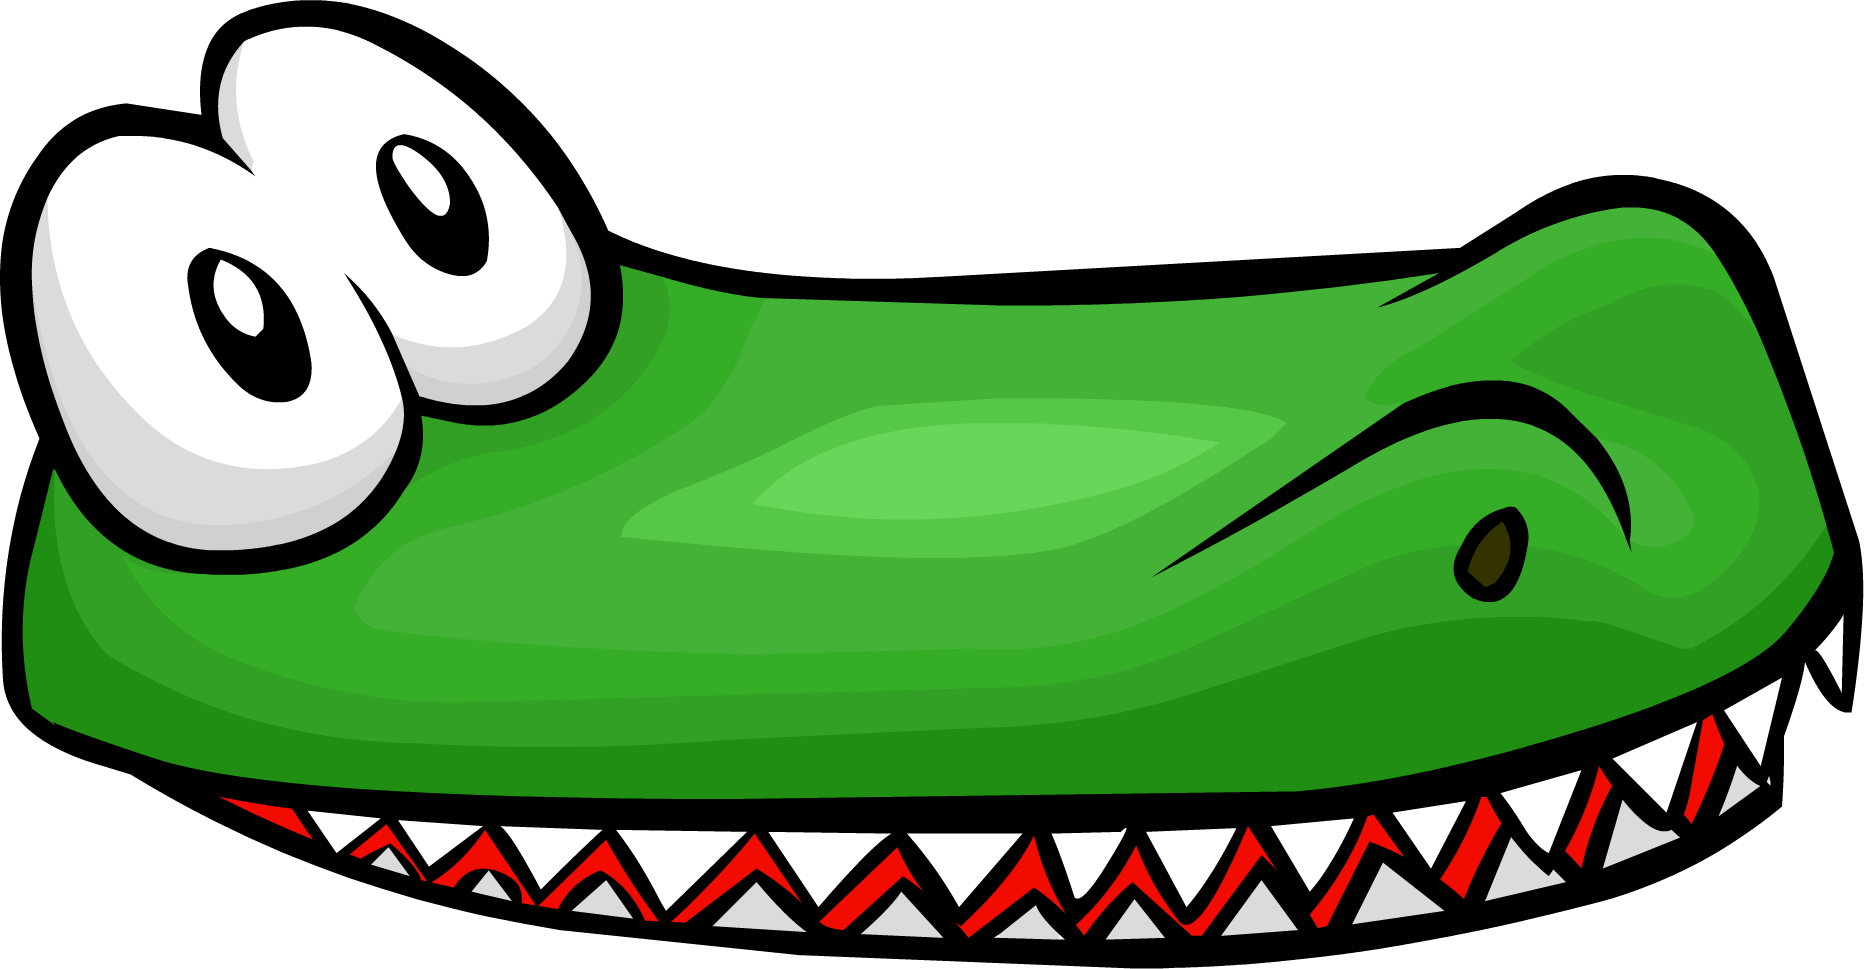 Crocodile - Crocodile (1864x969)